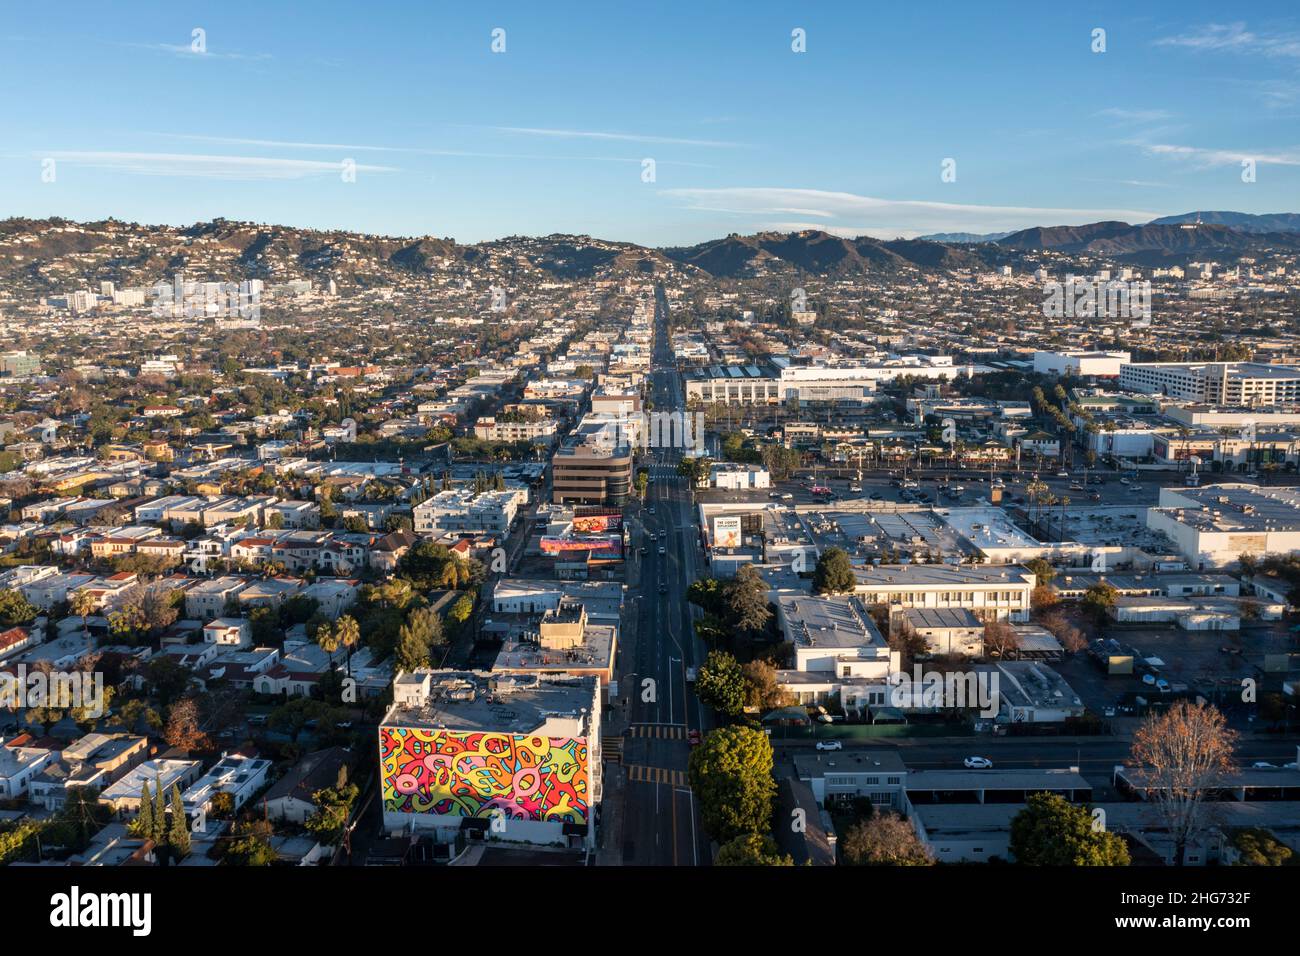 Vue aérienne vers le nord le long de Fairfax Boulevard vers Hollywood depuis Mid-Wilshire, Los Angeles, Californie Banque D'Images